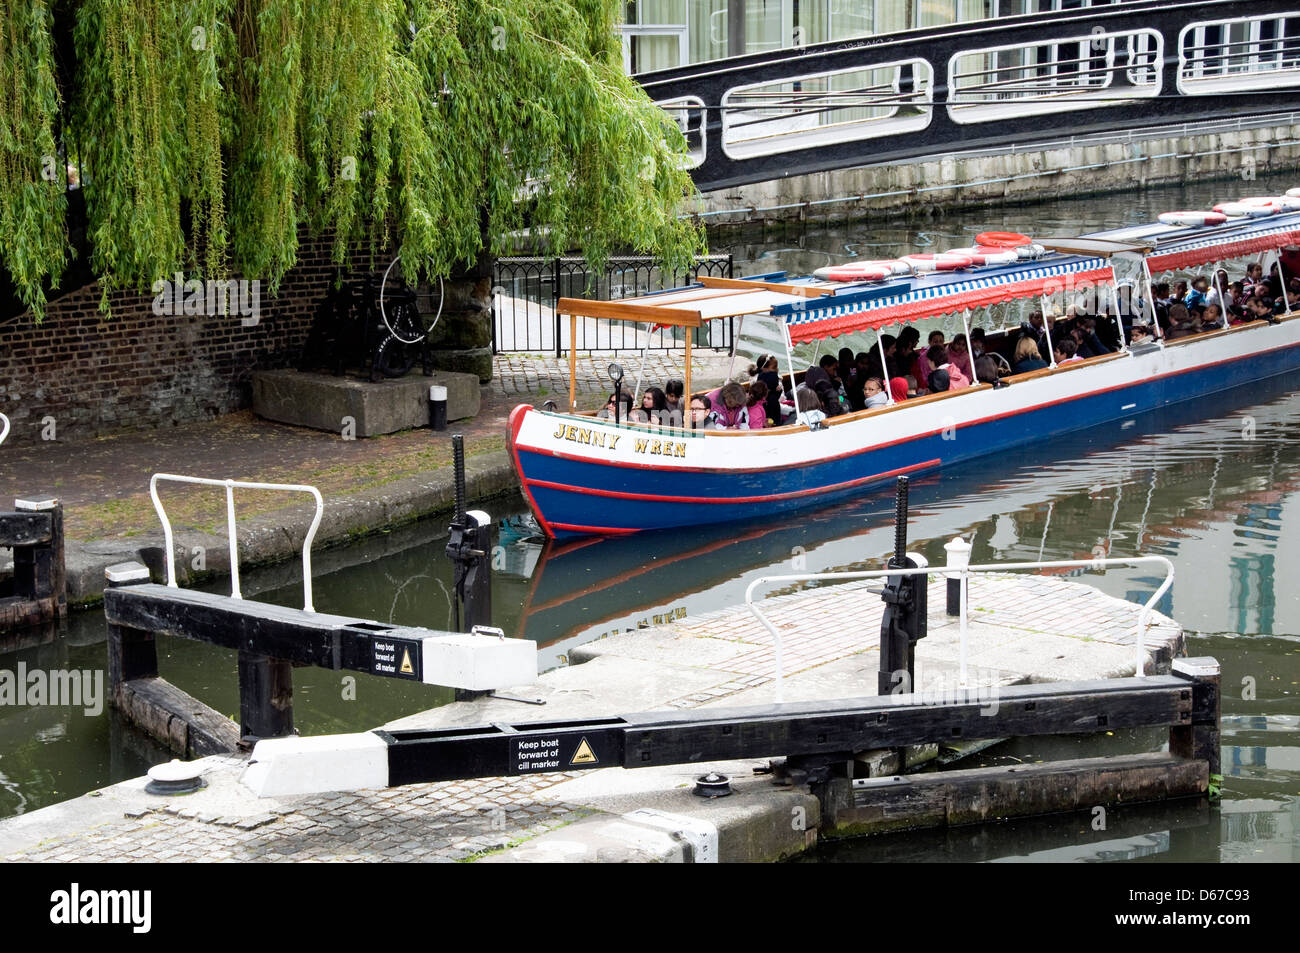 Jenny Wren bateau étroit canal près de Hampstead Road Lock 1 ou Camden Lock sur le Regent's Canal, London England UK Banque D'Images